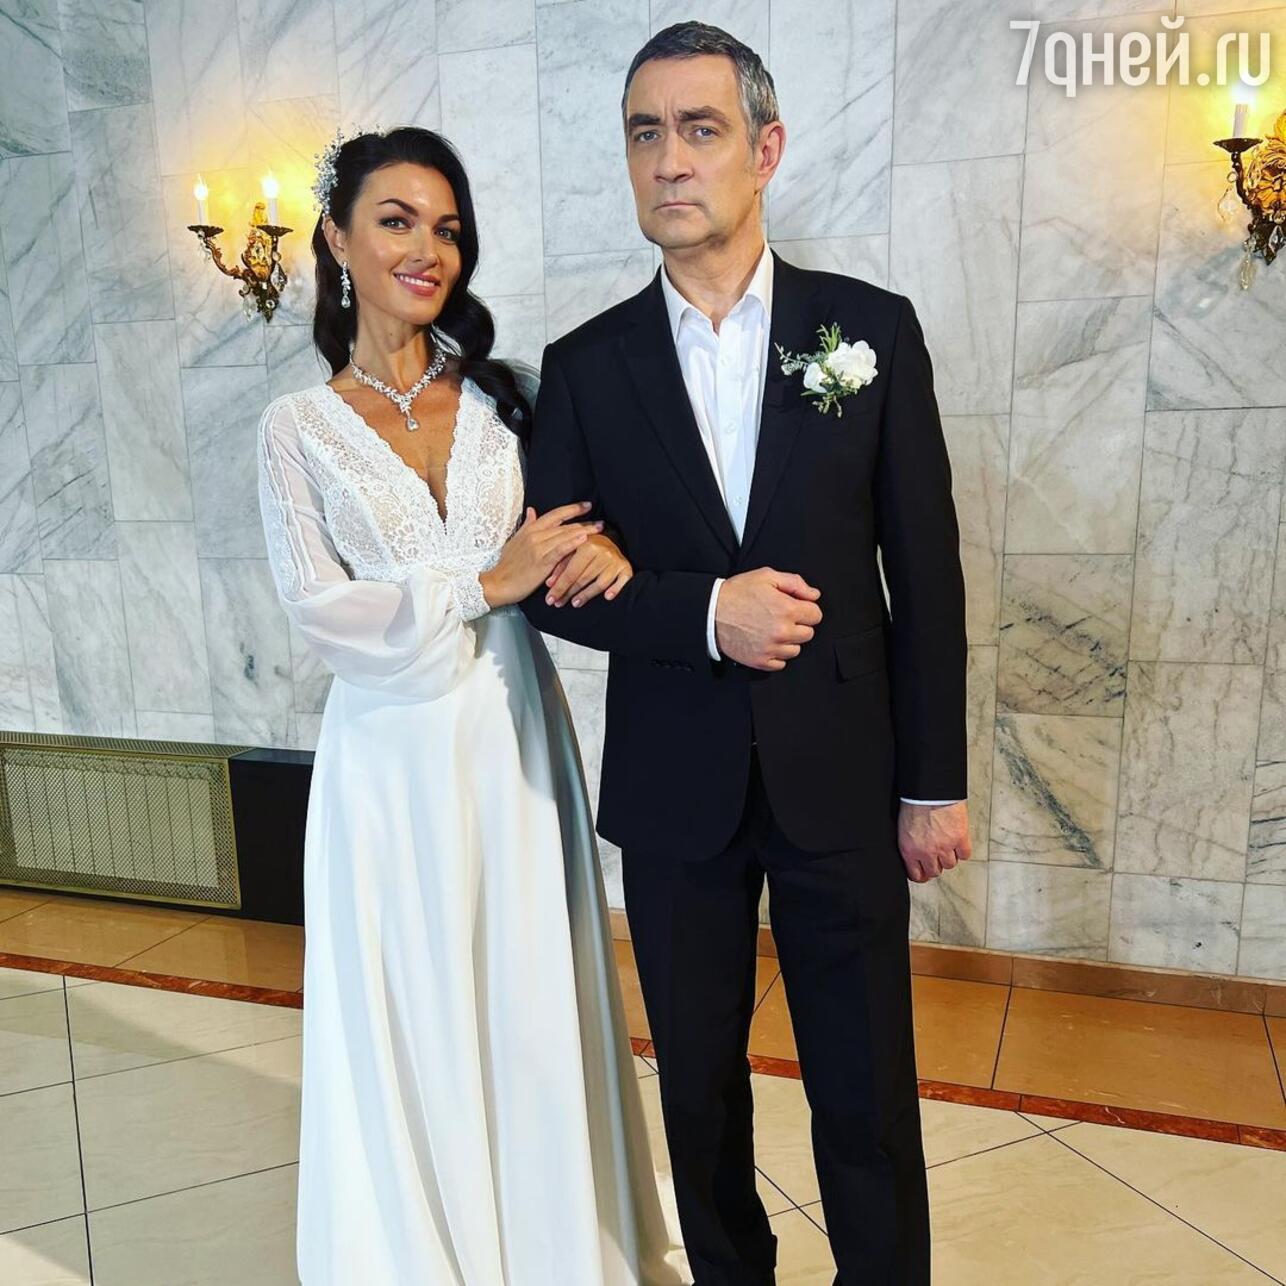 Жених совсем седой: роскошная Такшина поделилась свадебными фото - 7Дней.ру